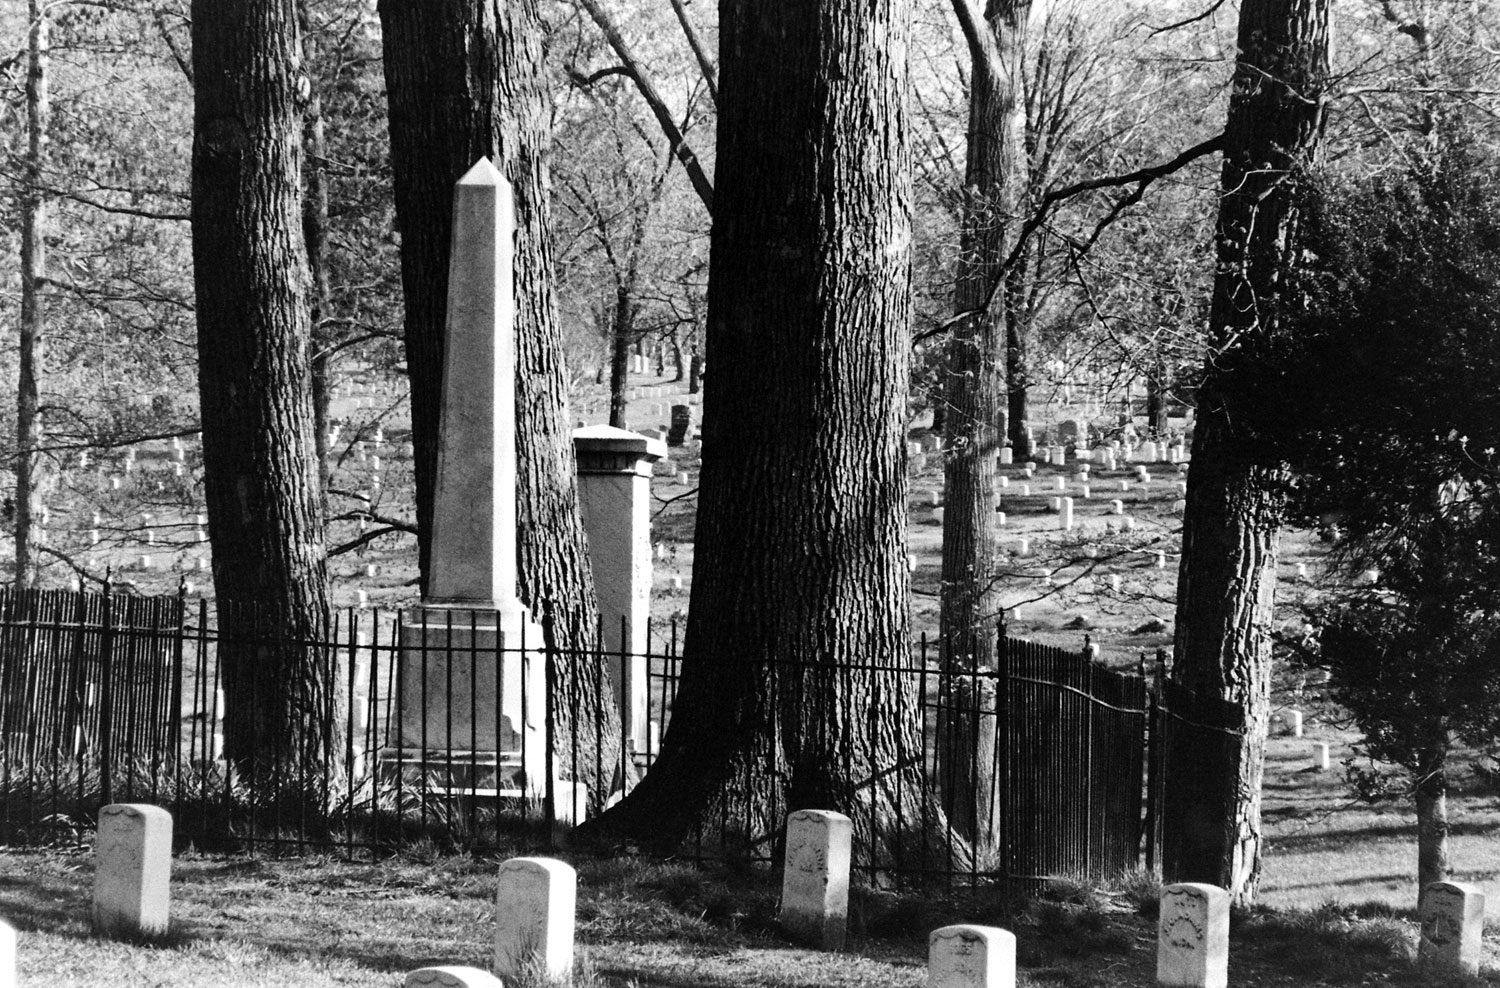 Arlington National Cemetery 1965